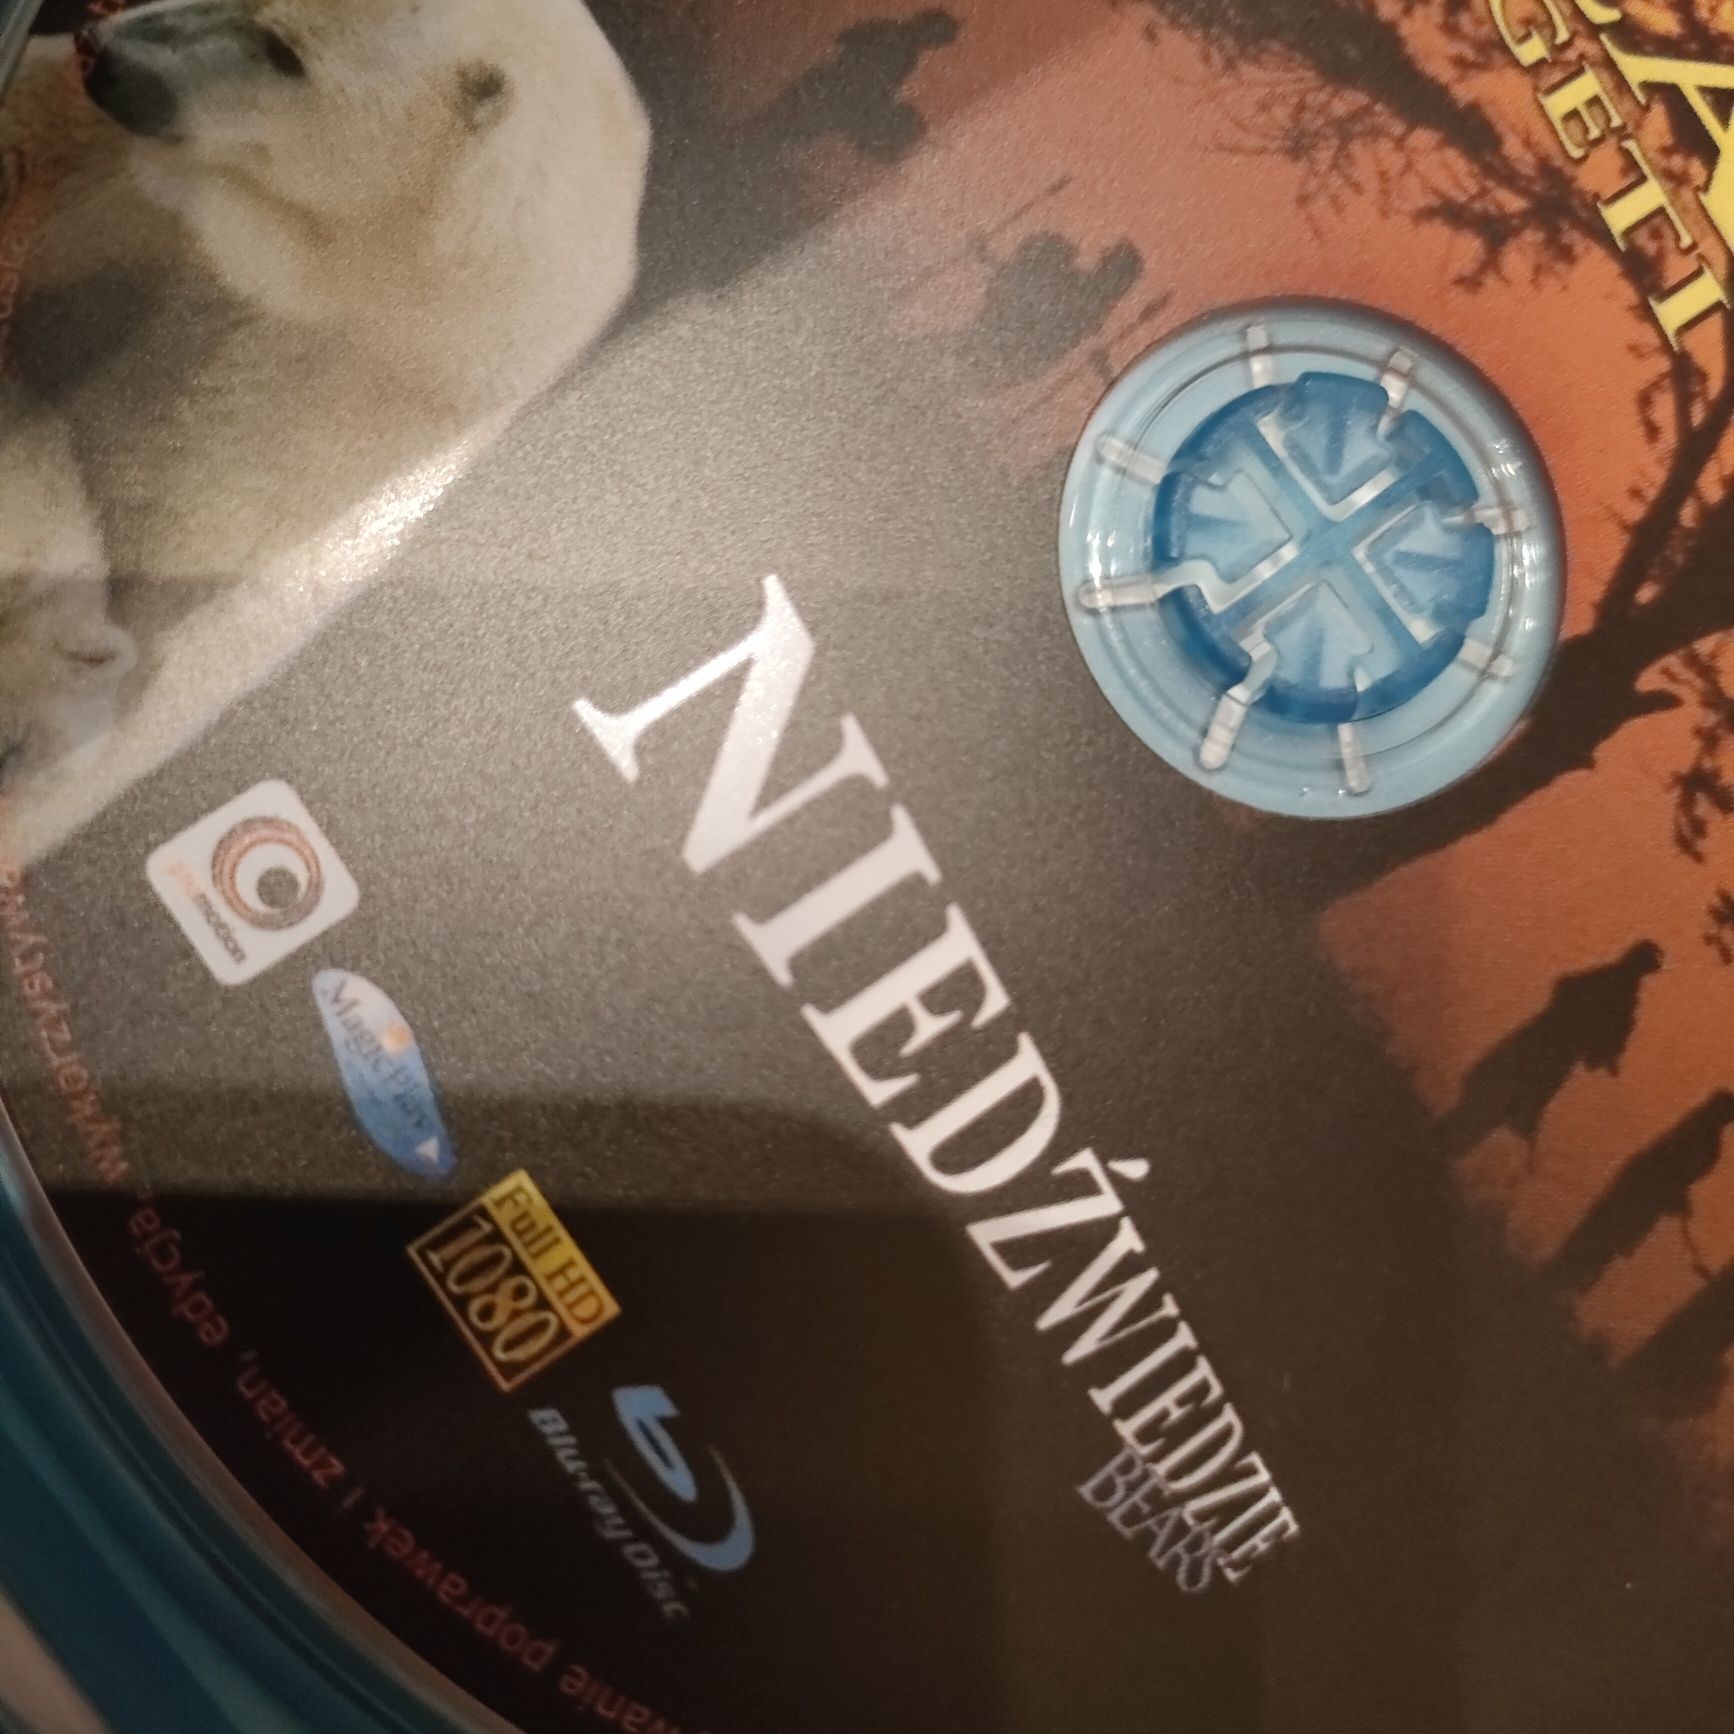 Film ma Blu-Ray Full HD - Afryka , Niedźwiedzie